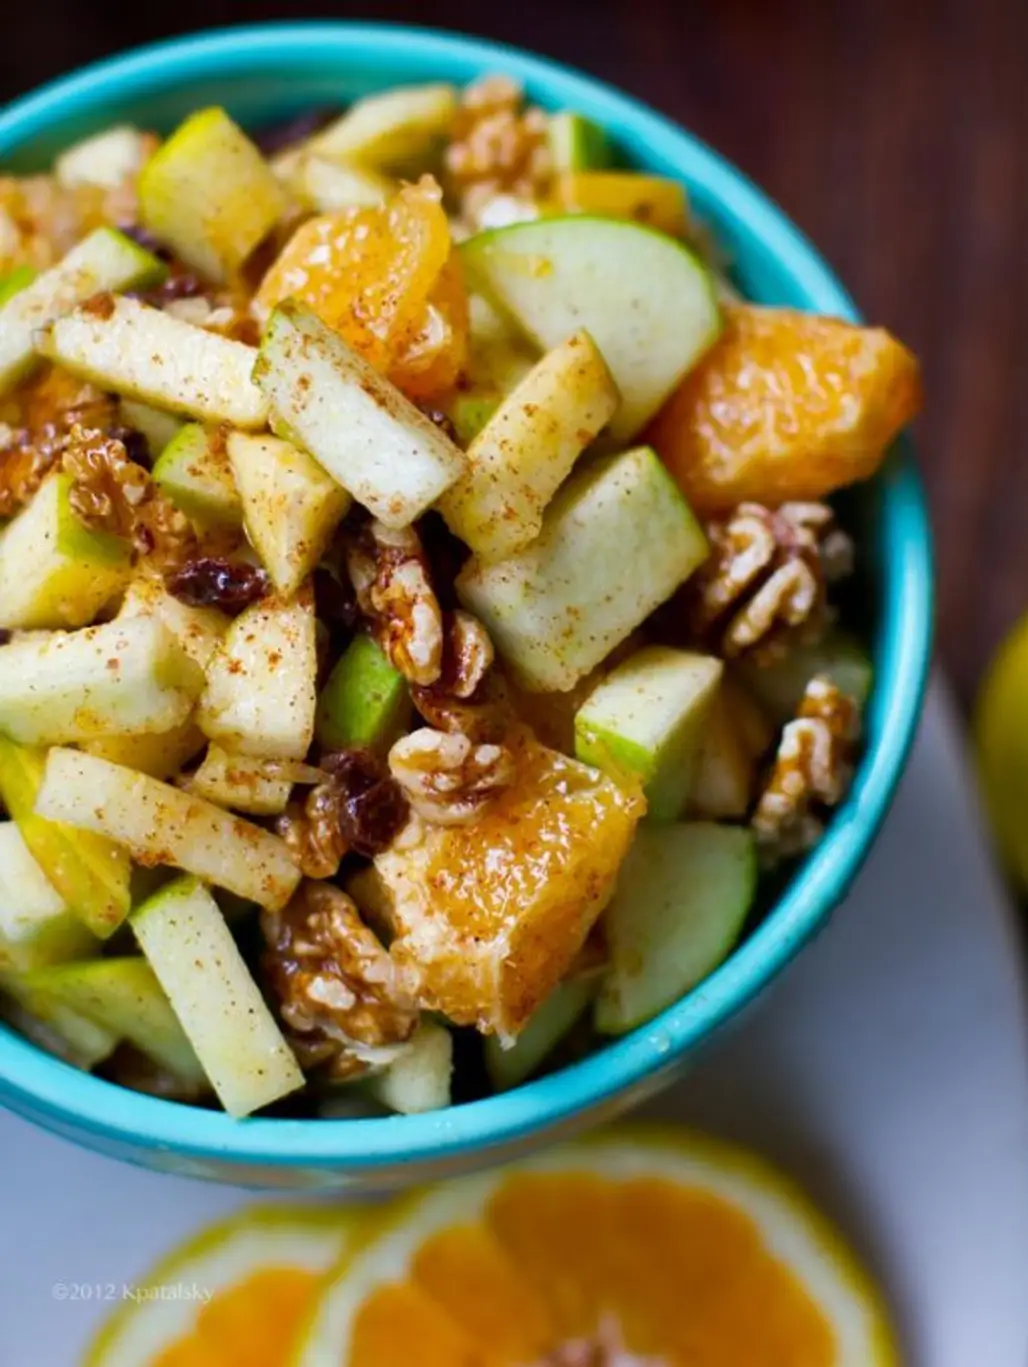 Apple Citrus & Cinnamon Fruit Salad